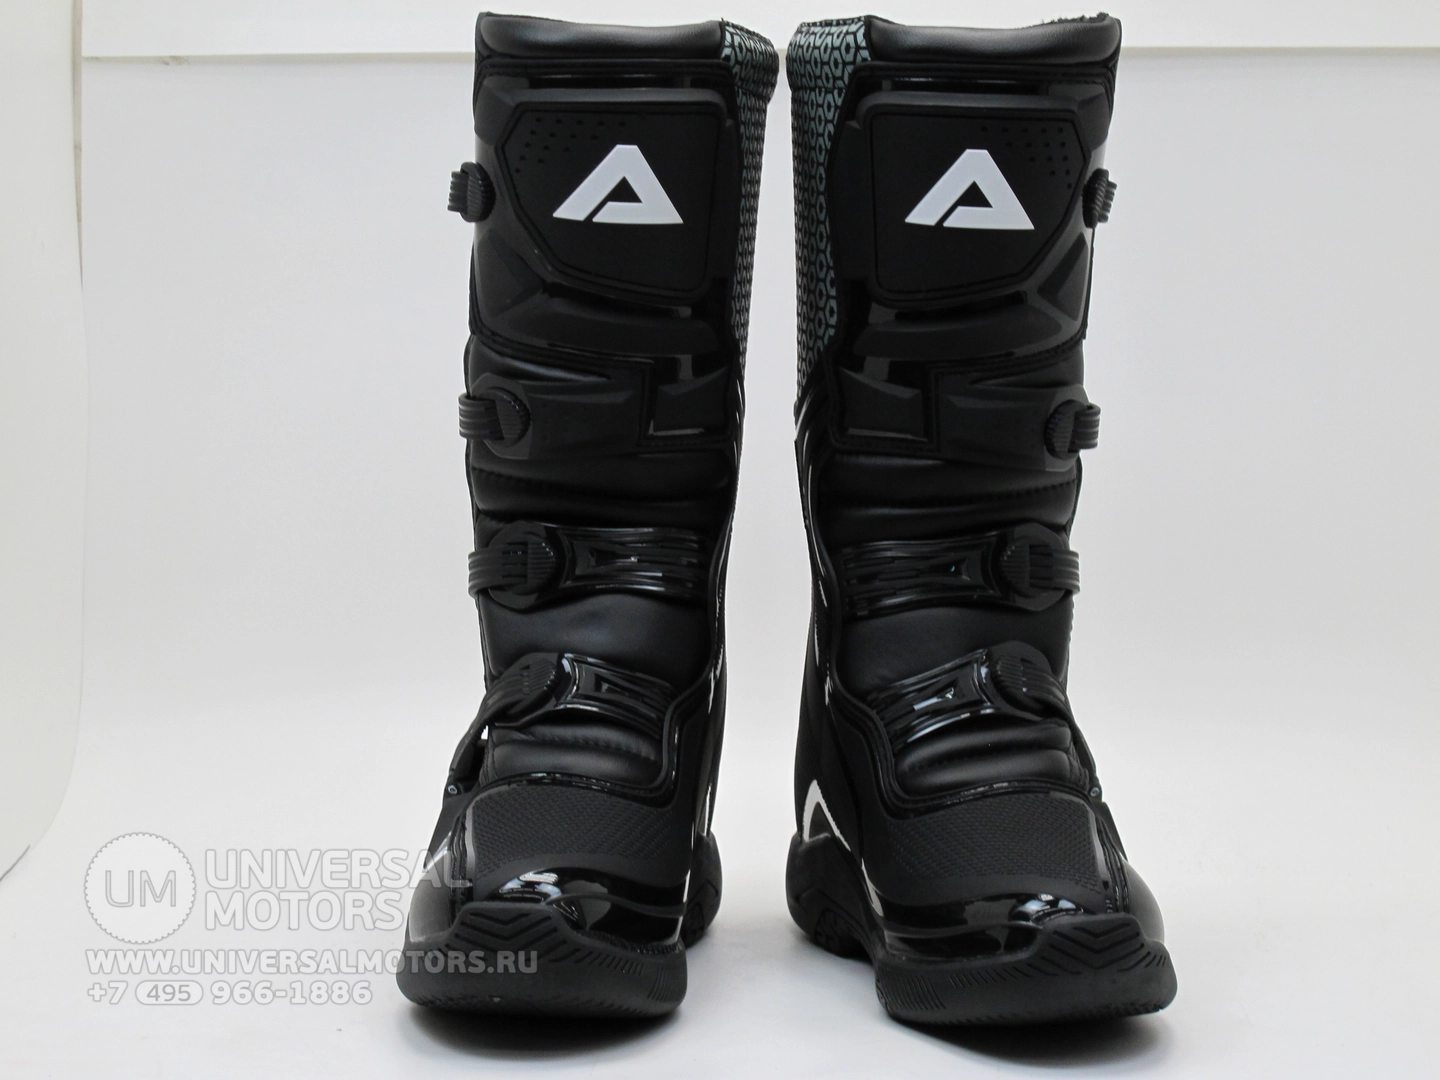 Мотоботы Ataki кроссовые MX-001 черные, Материал эко-кожи